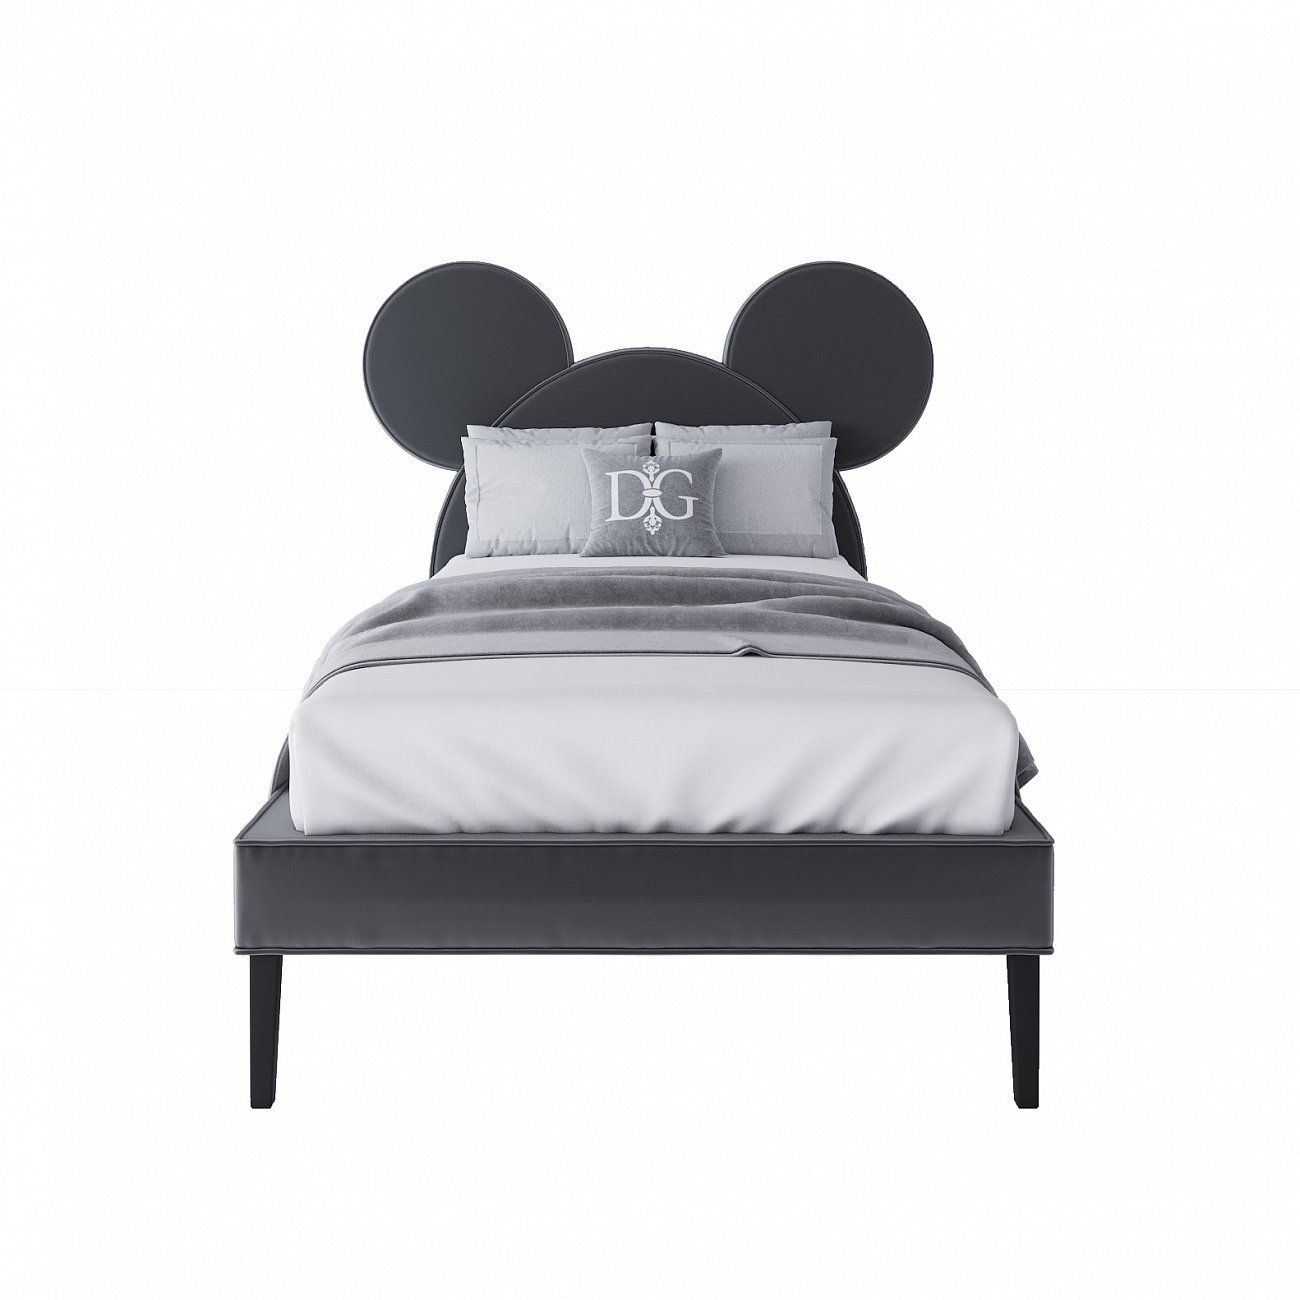 Кровать Mickey Mouse детская односпальная 90х200 серая